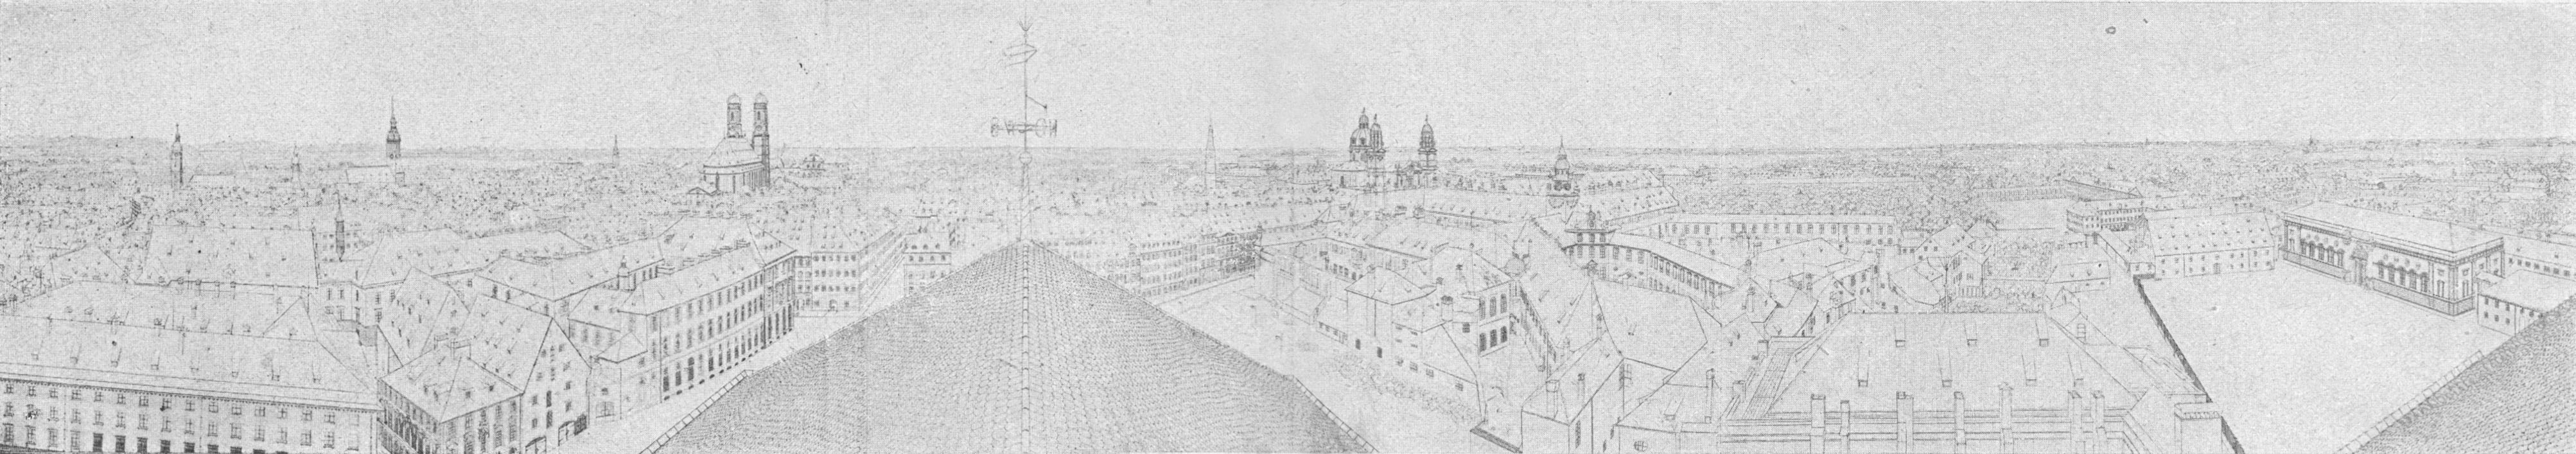 Panorama der Stadt München vom kgl. Hoftheater aus ca. 1926